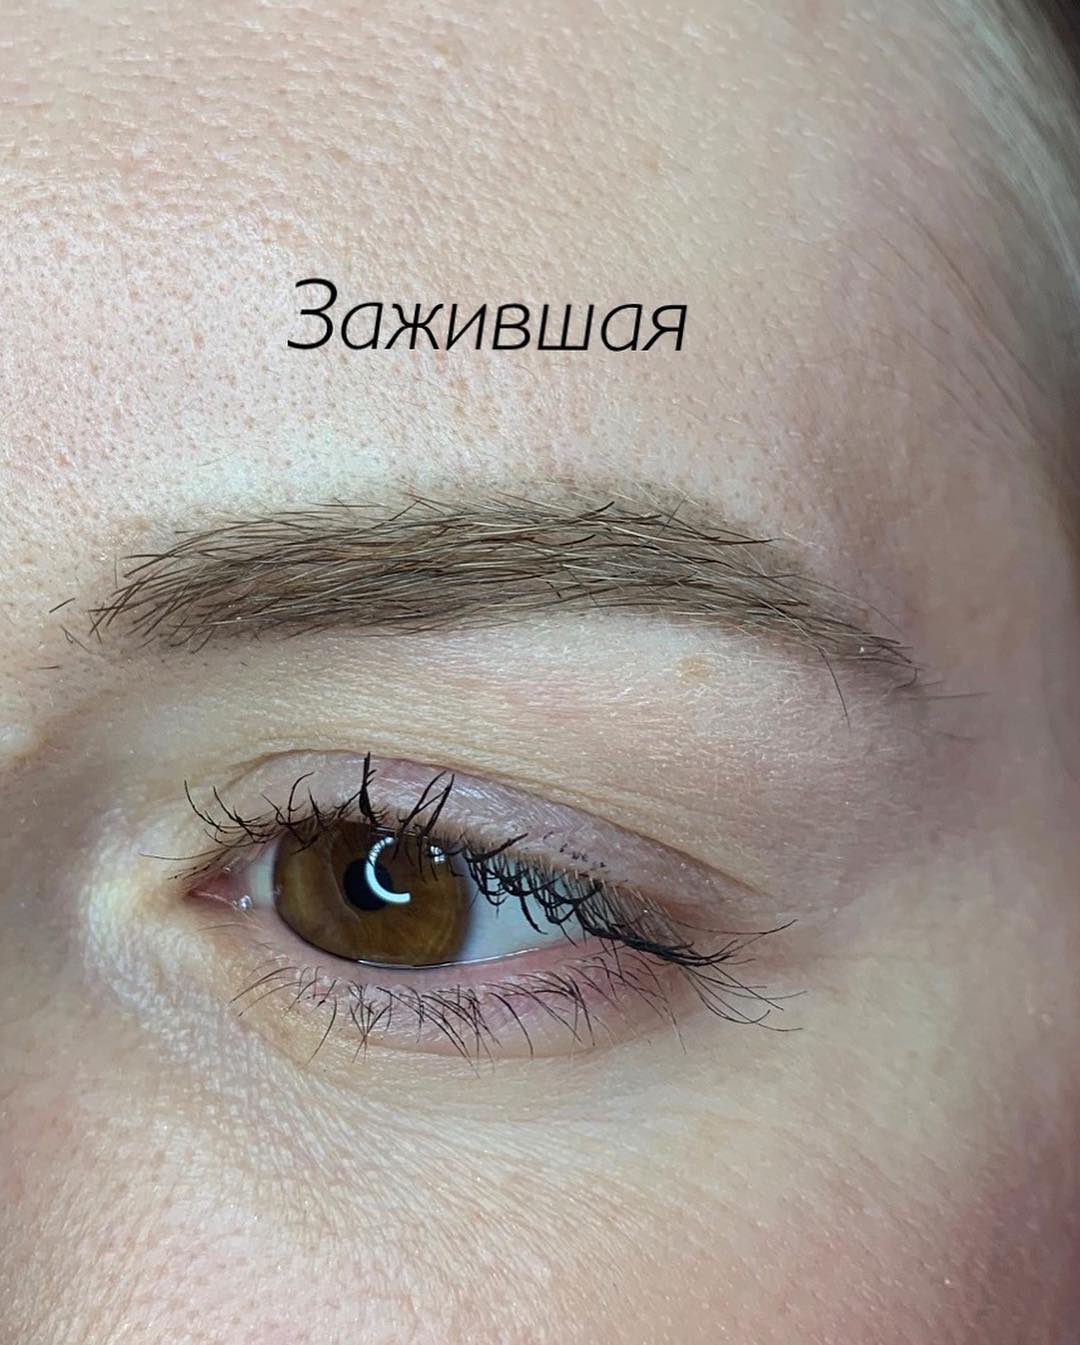 Как выглядит перманентный макияж бровей перед коррекцией|Хабаровск